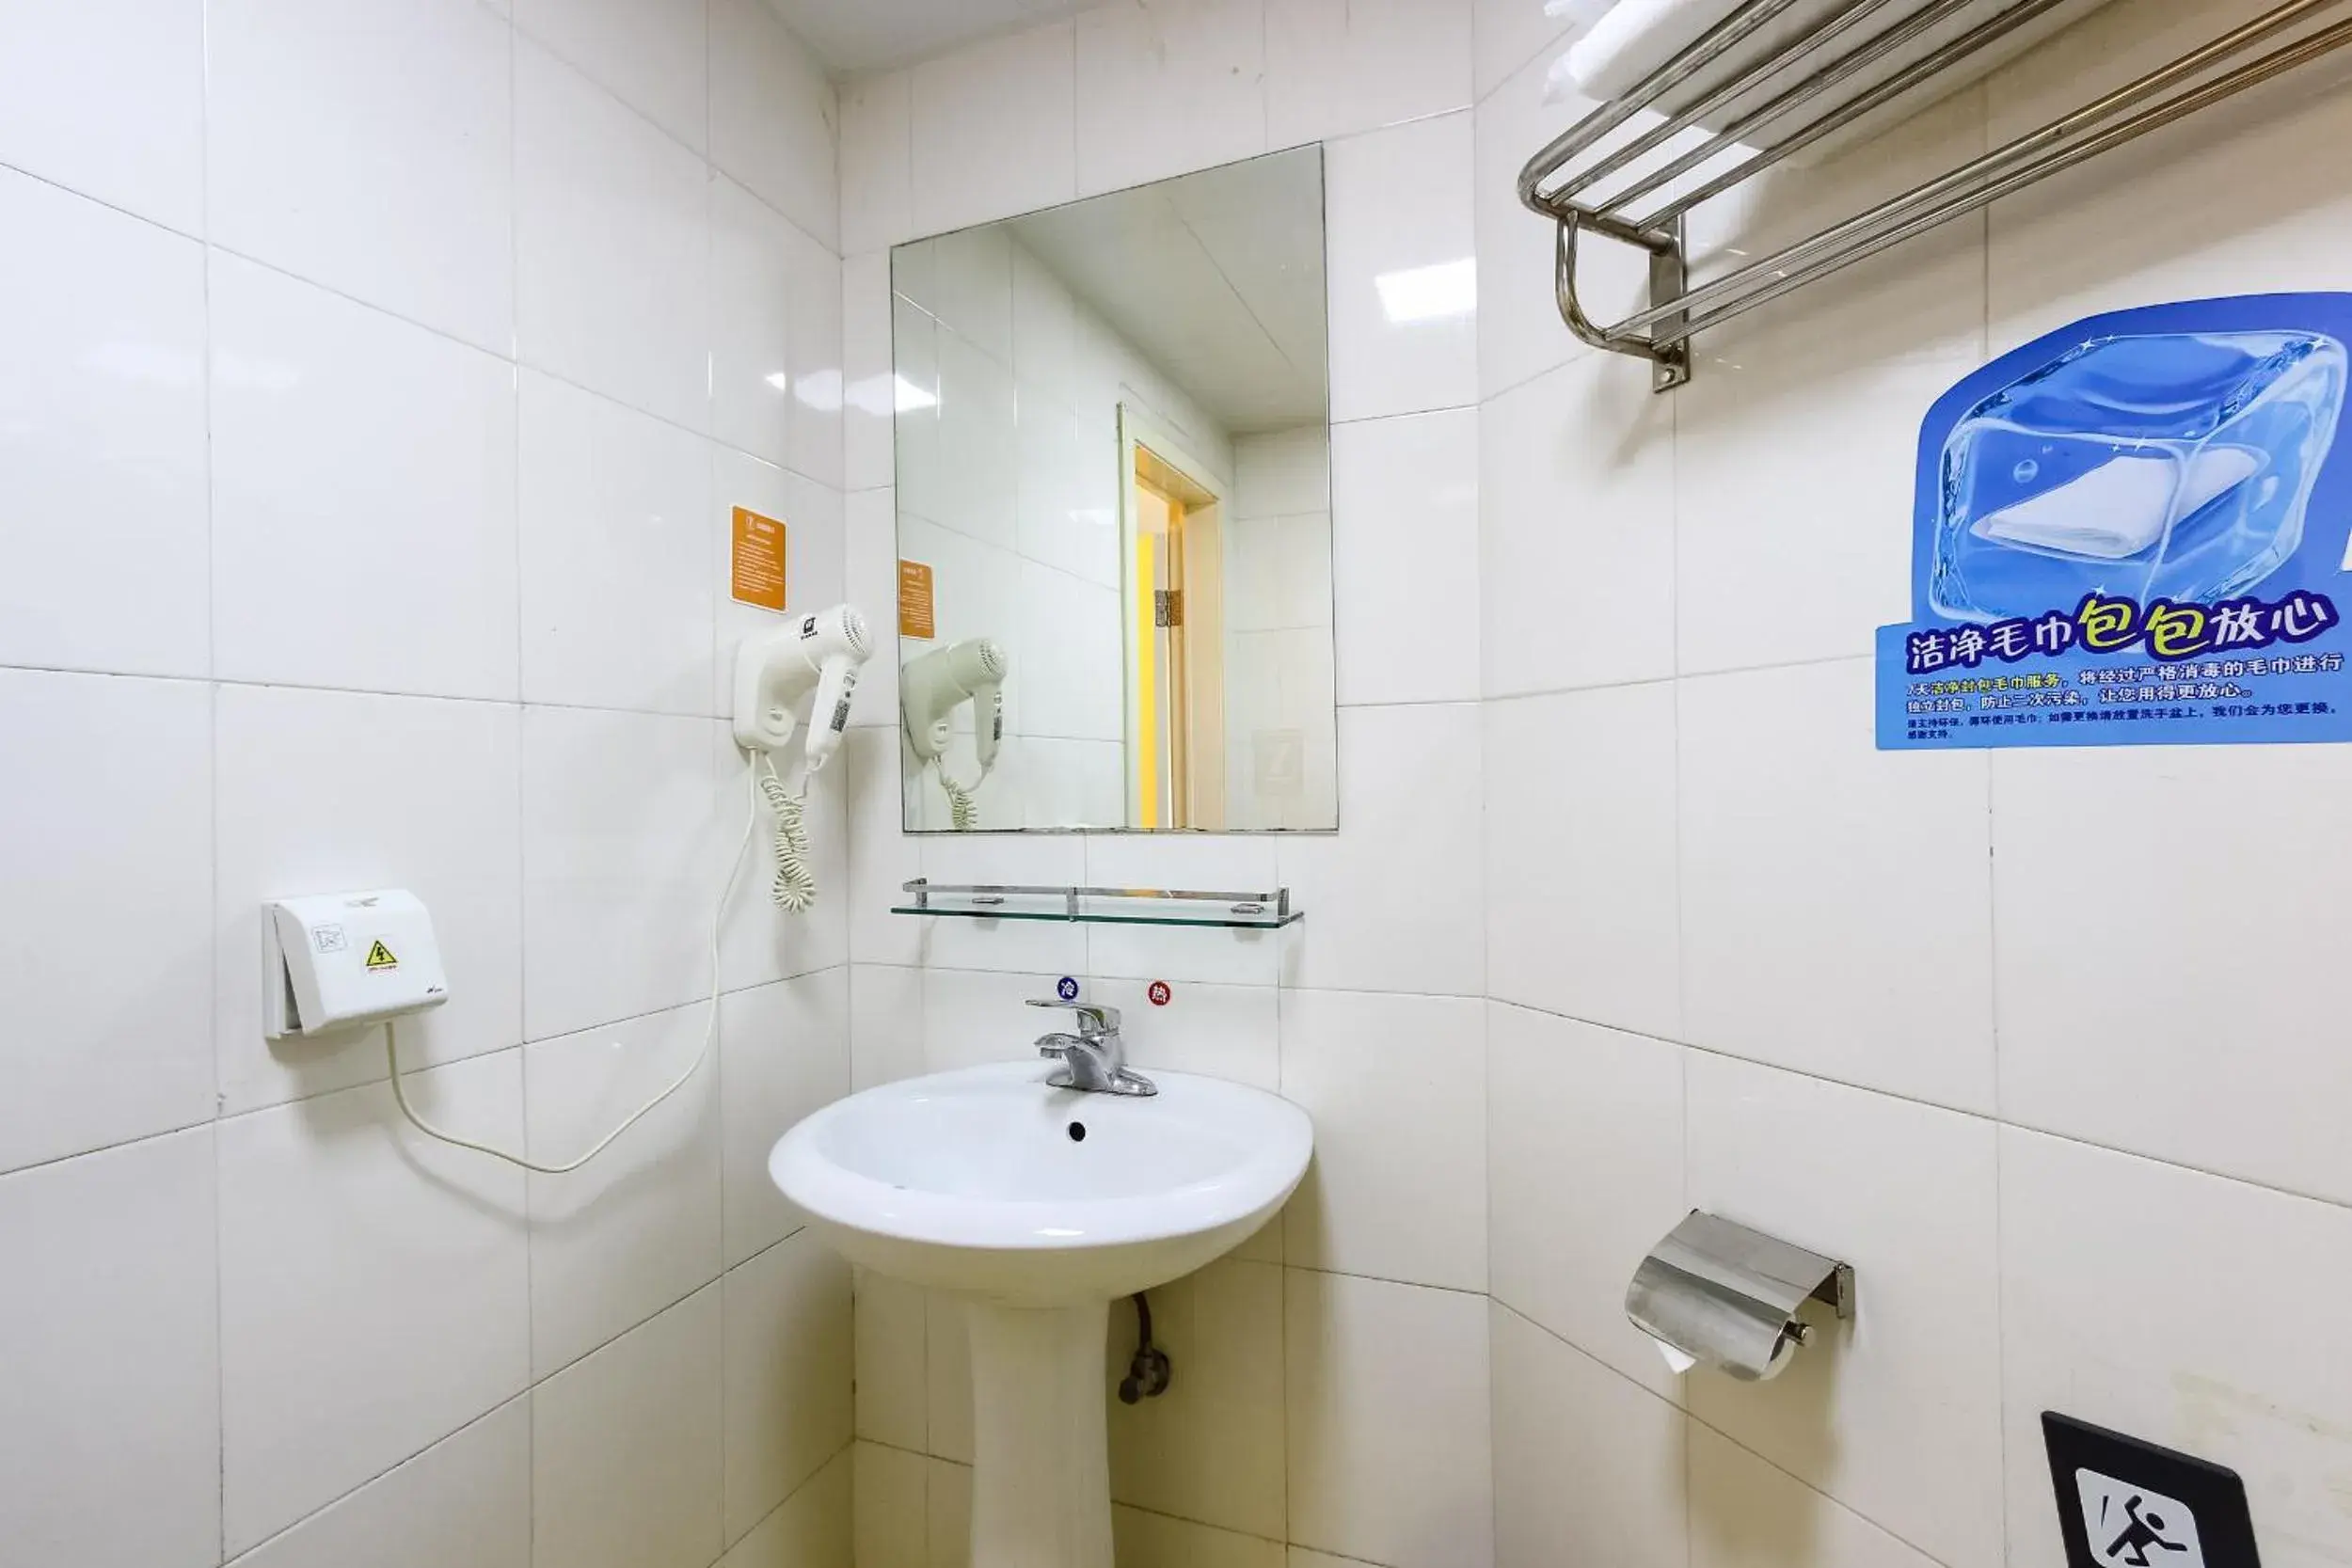 Toilet, Bathroom in 7 Days Inn Guangzhou Zhongshan 1st Overpass Branch